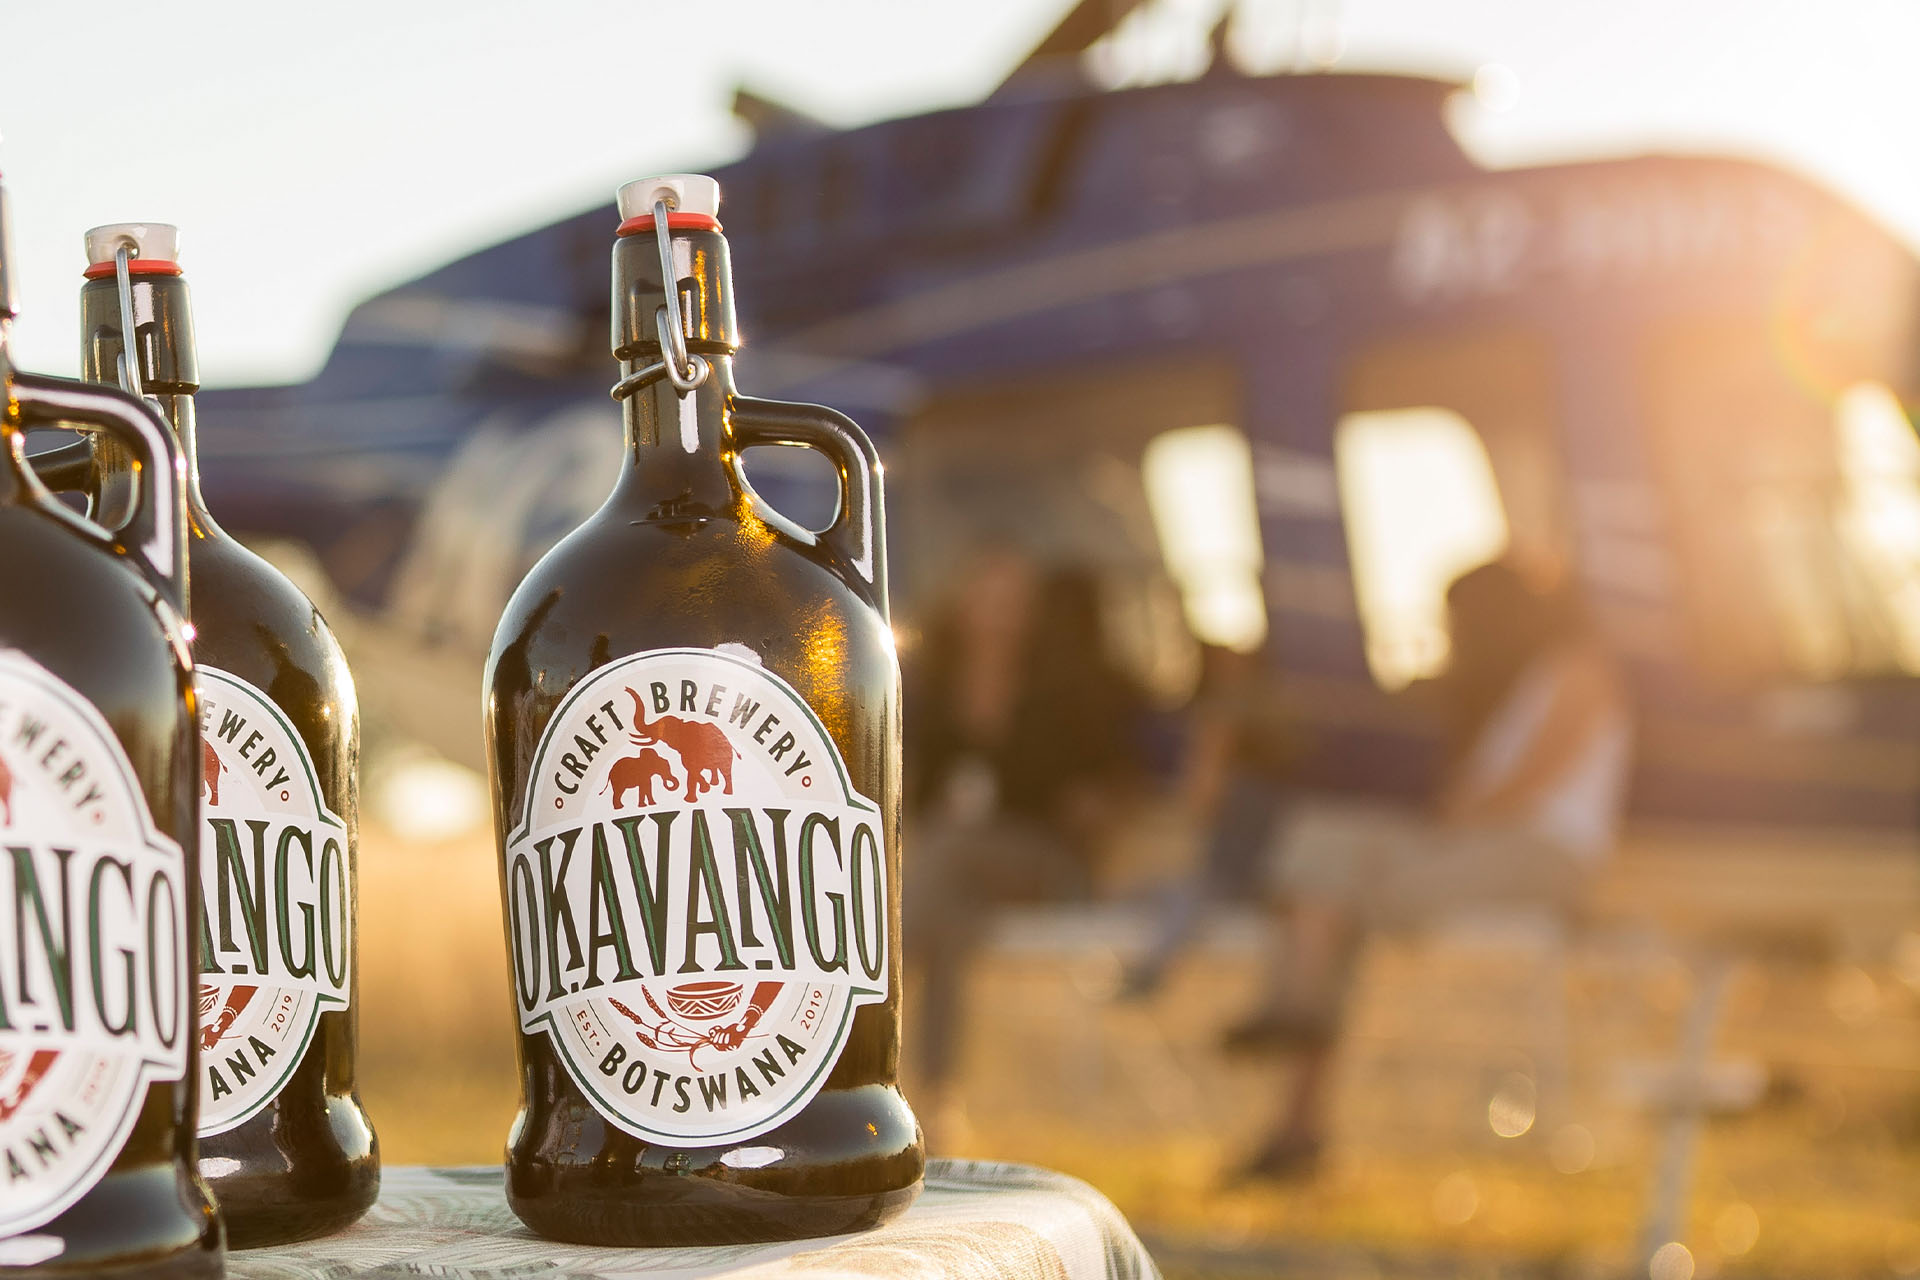 Explore Maun with Okavango craft beer